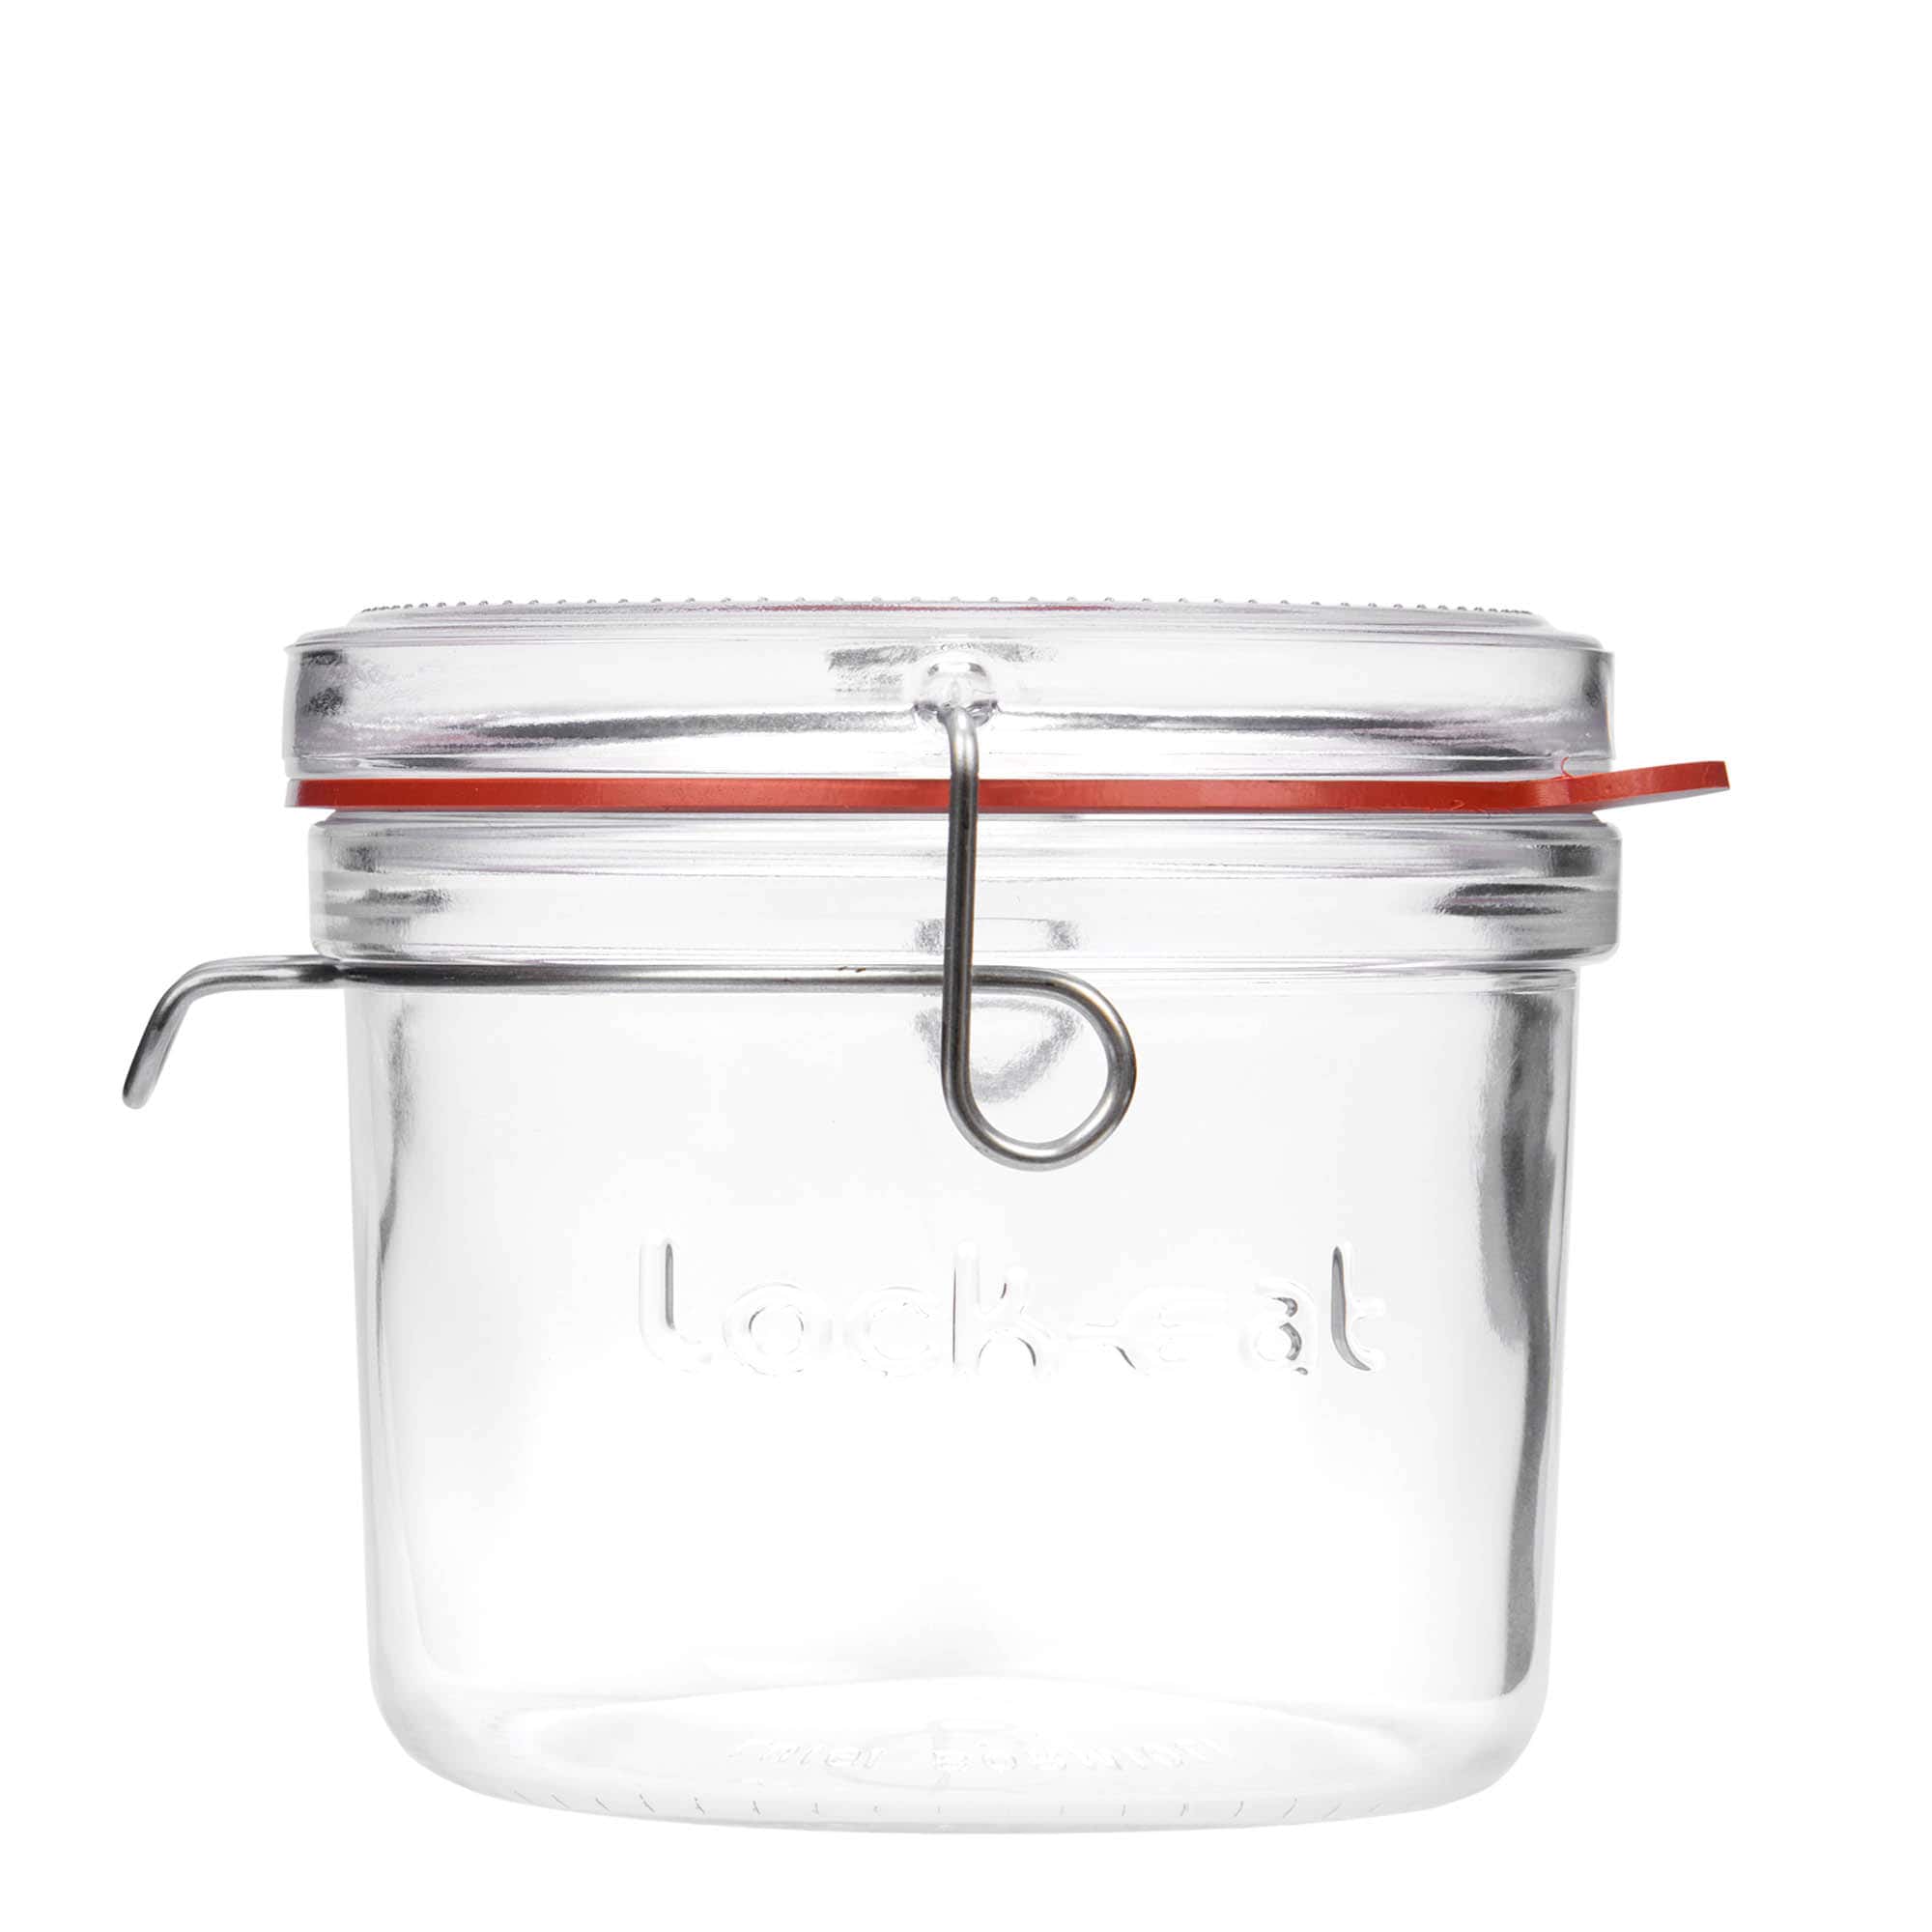 500 ml clip top jar 'Lock-Eat', closure: clip top